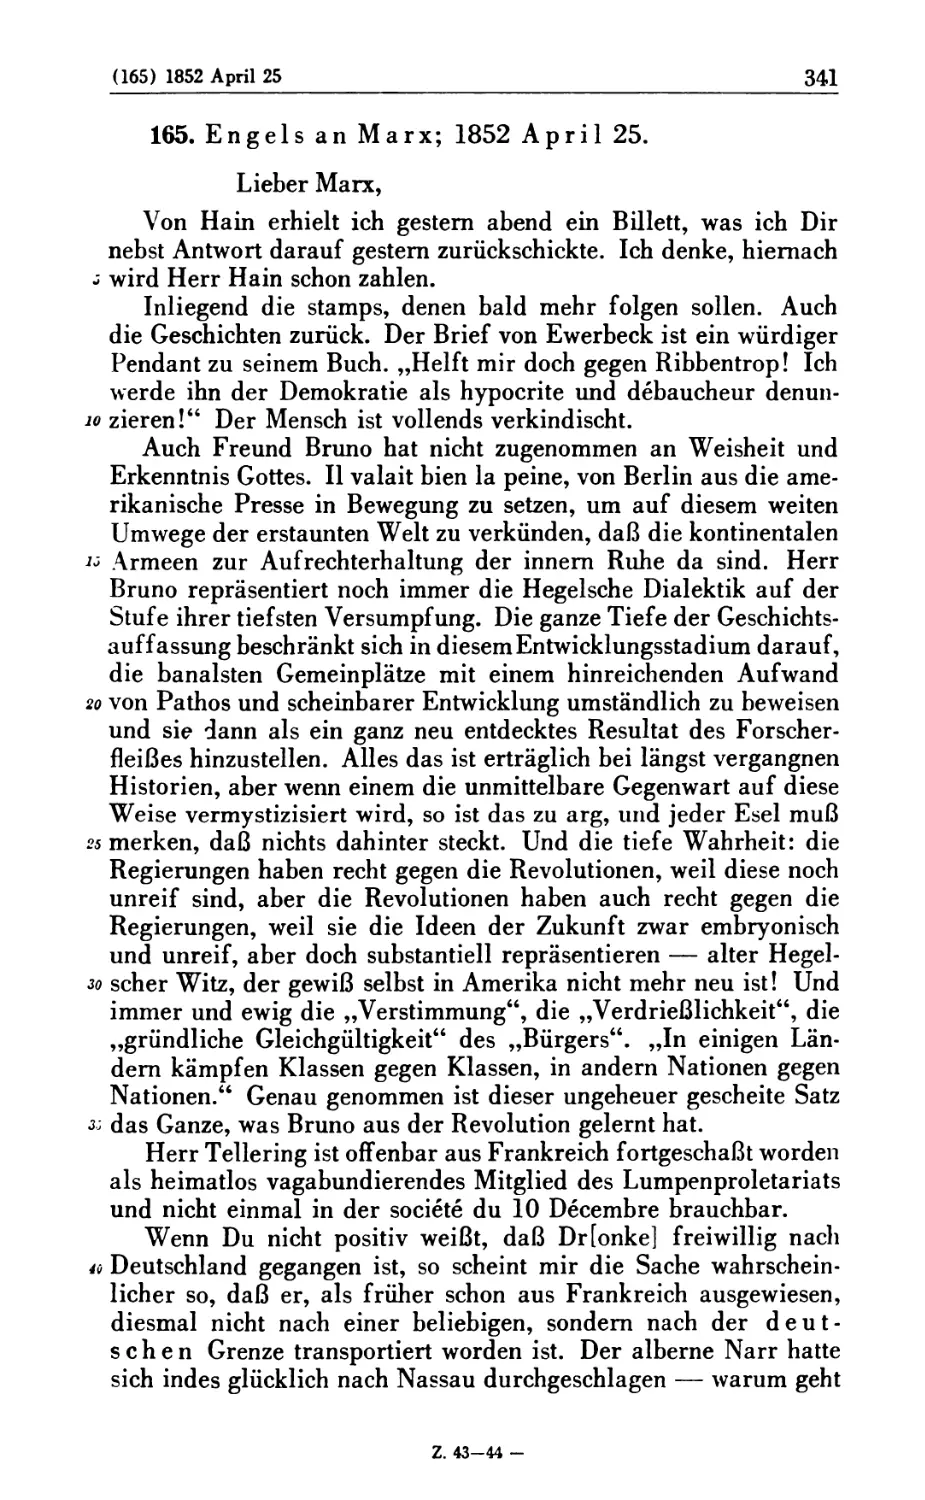 165. Engels an Marx; 1852 April 25